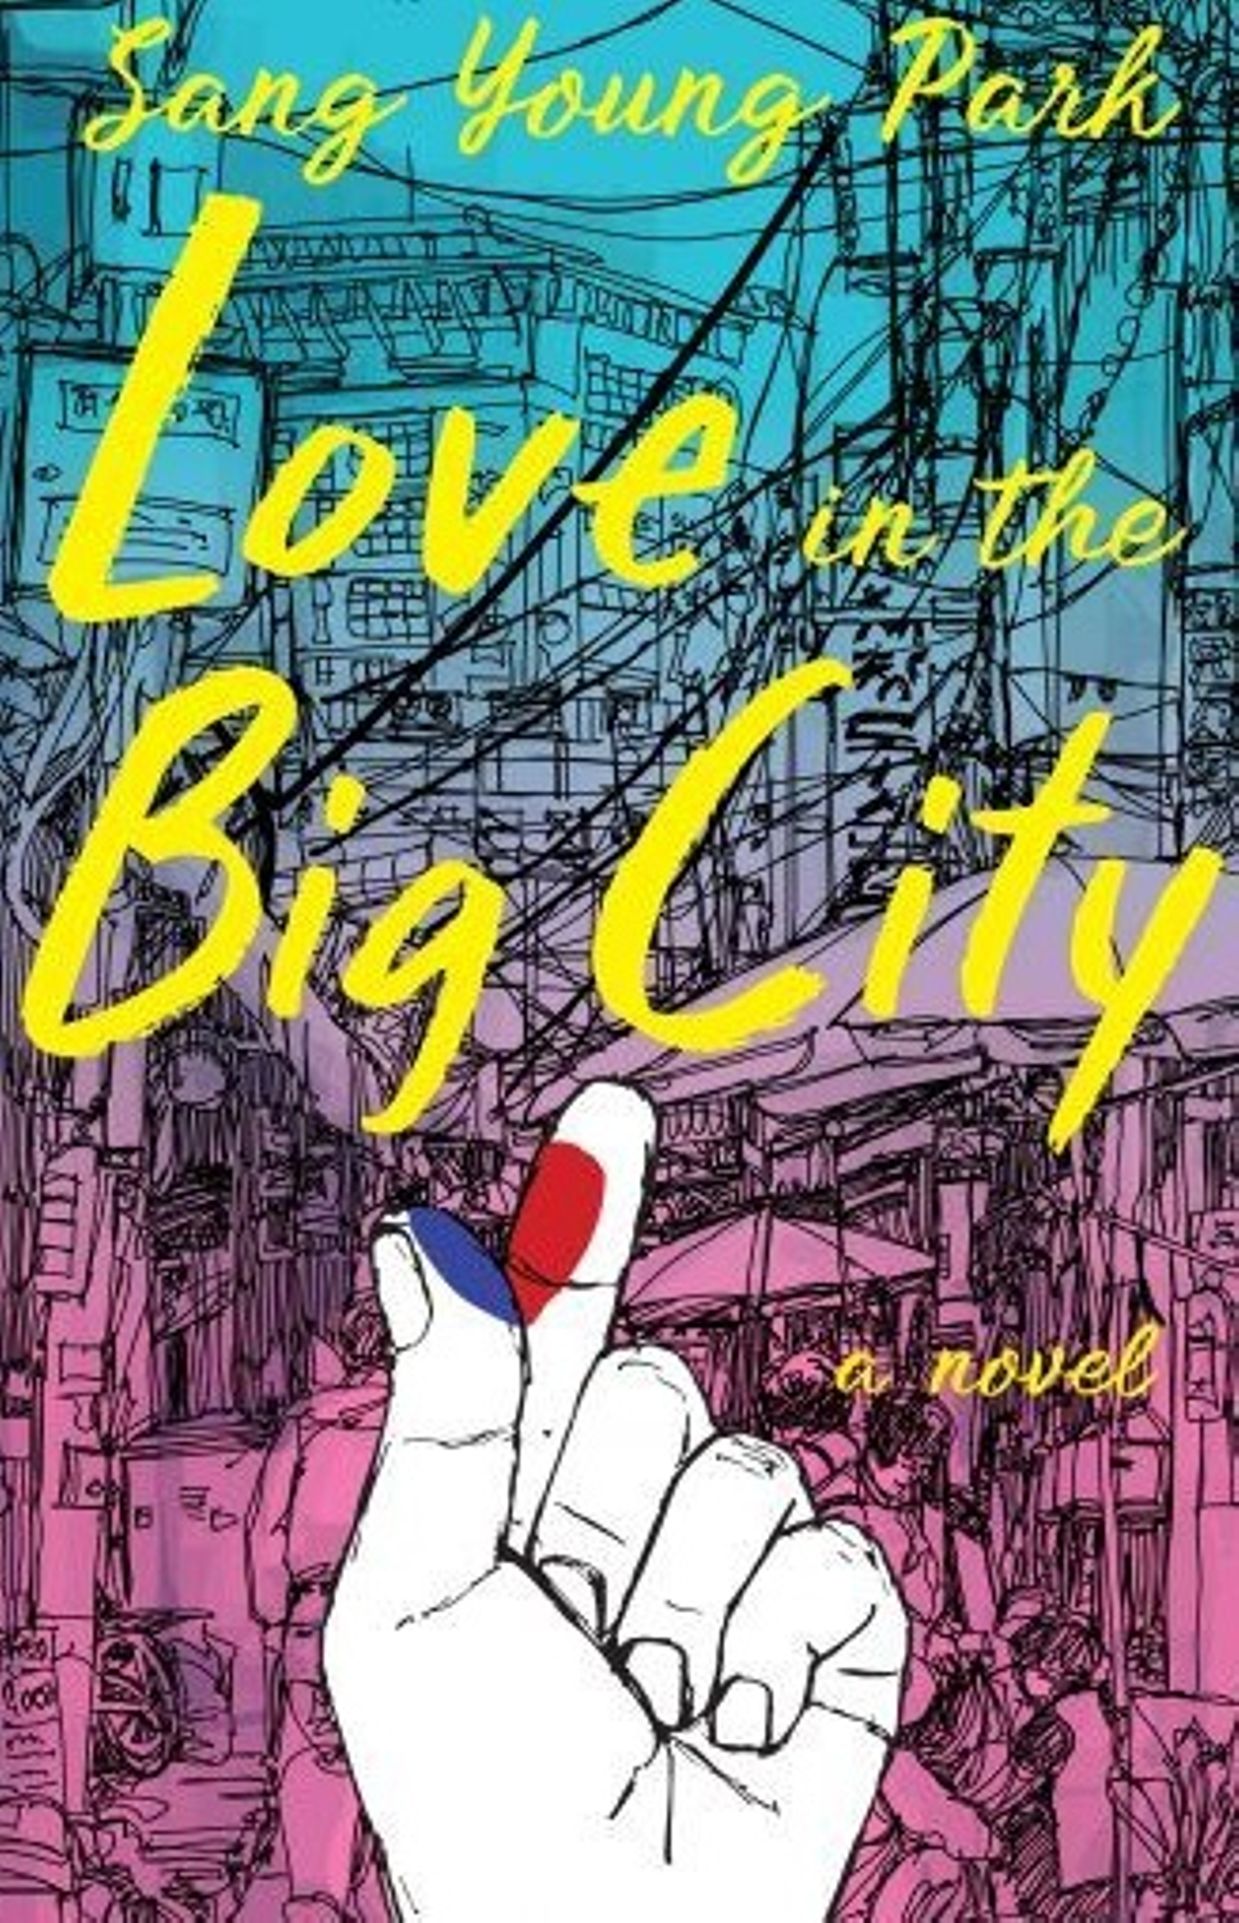 Première de couverture du livre de Sang Young Park "Love in the Big City".